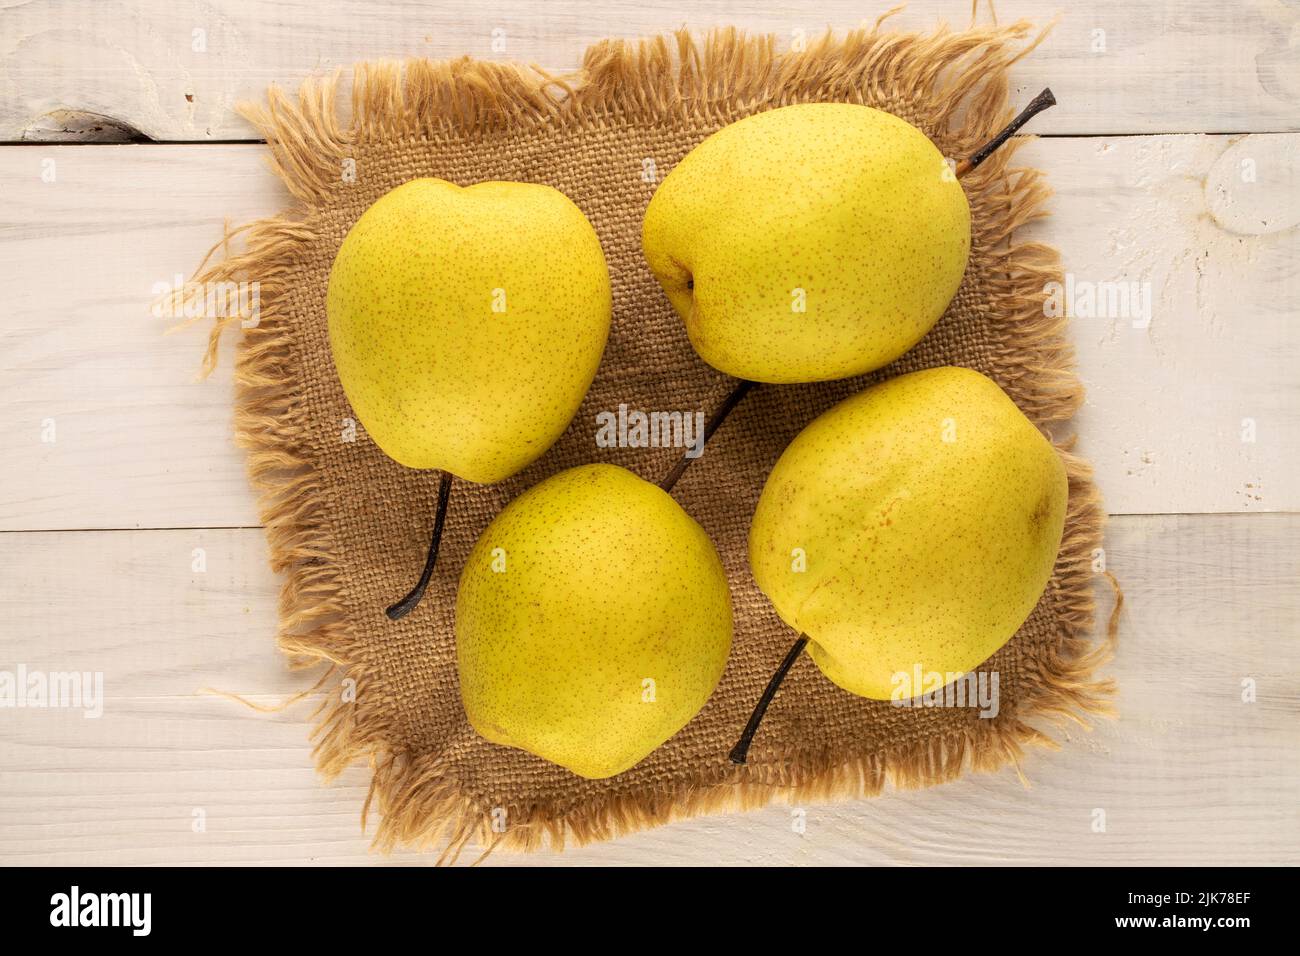 Quatre poires jaunes douces avec une serviette en jute sur une table en bois, vue rapprochée du dessus. Banque D'Images